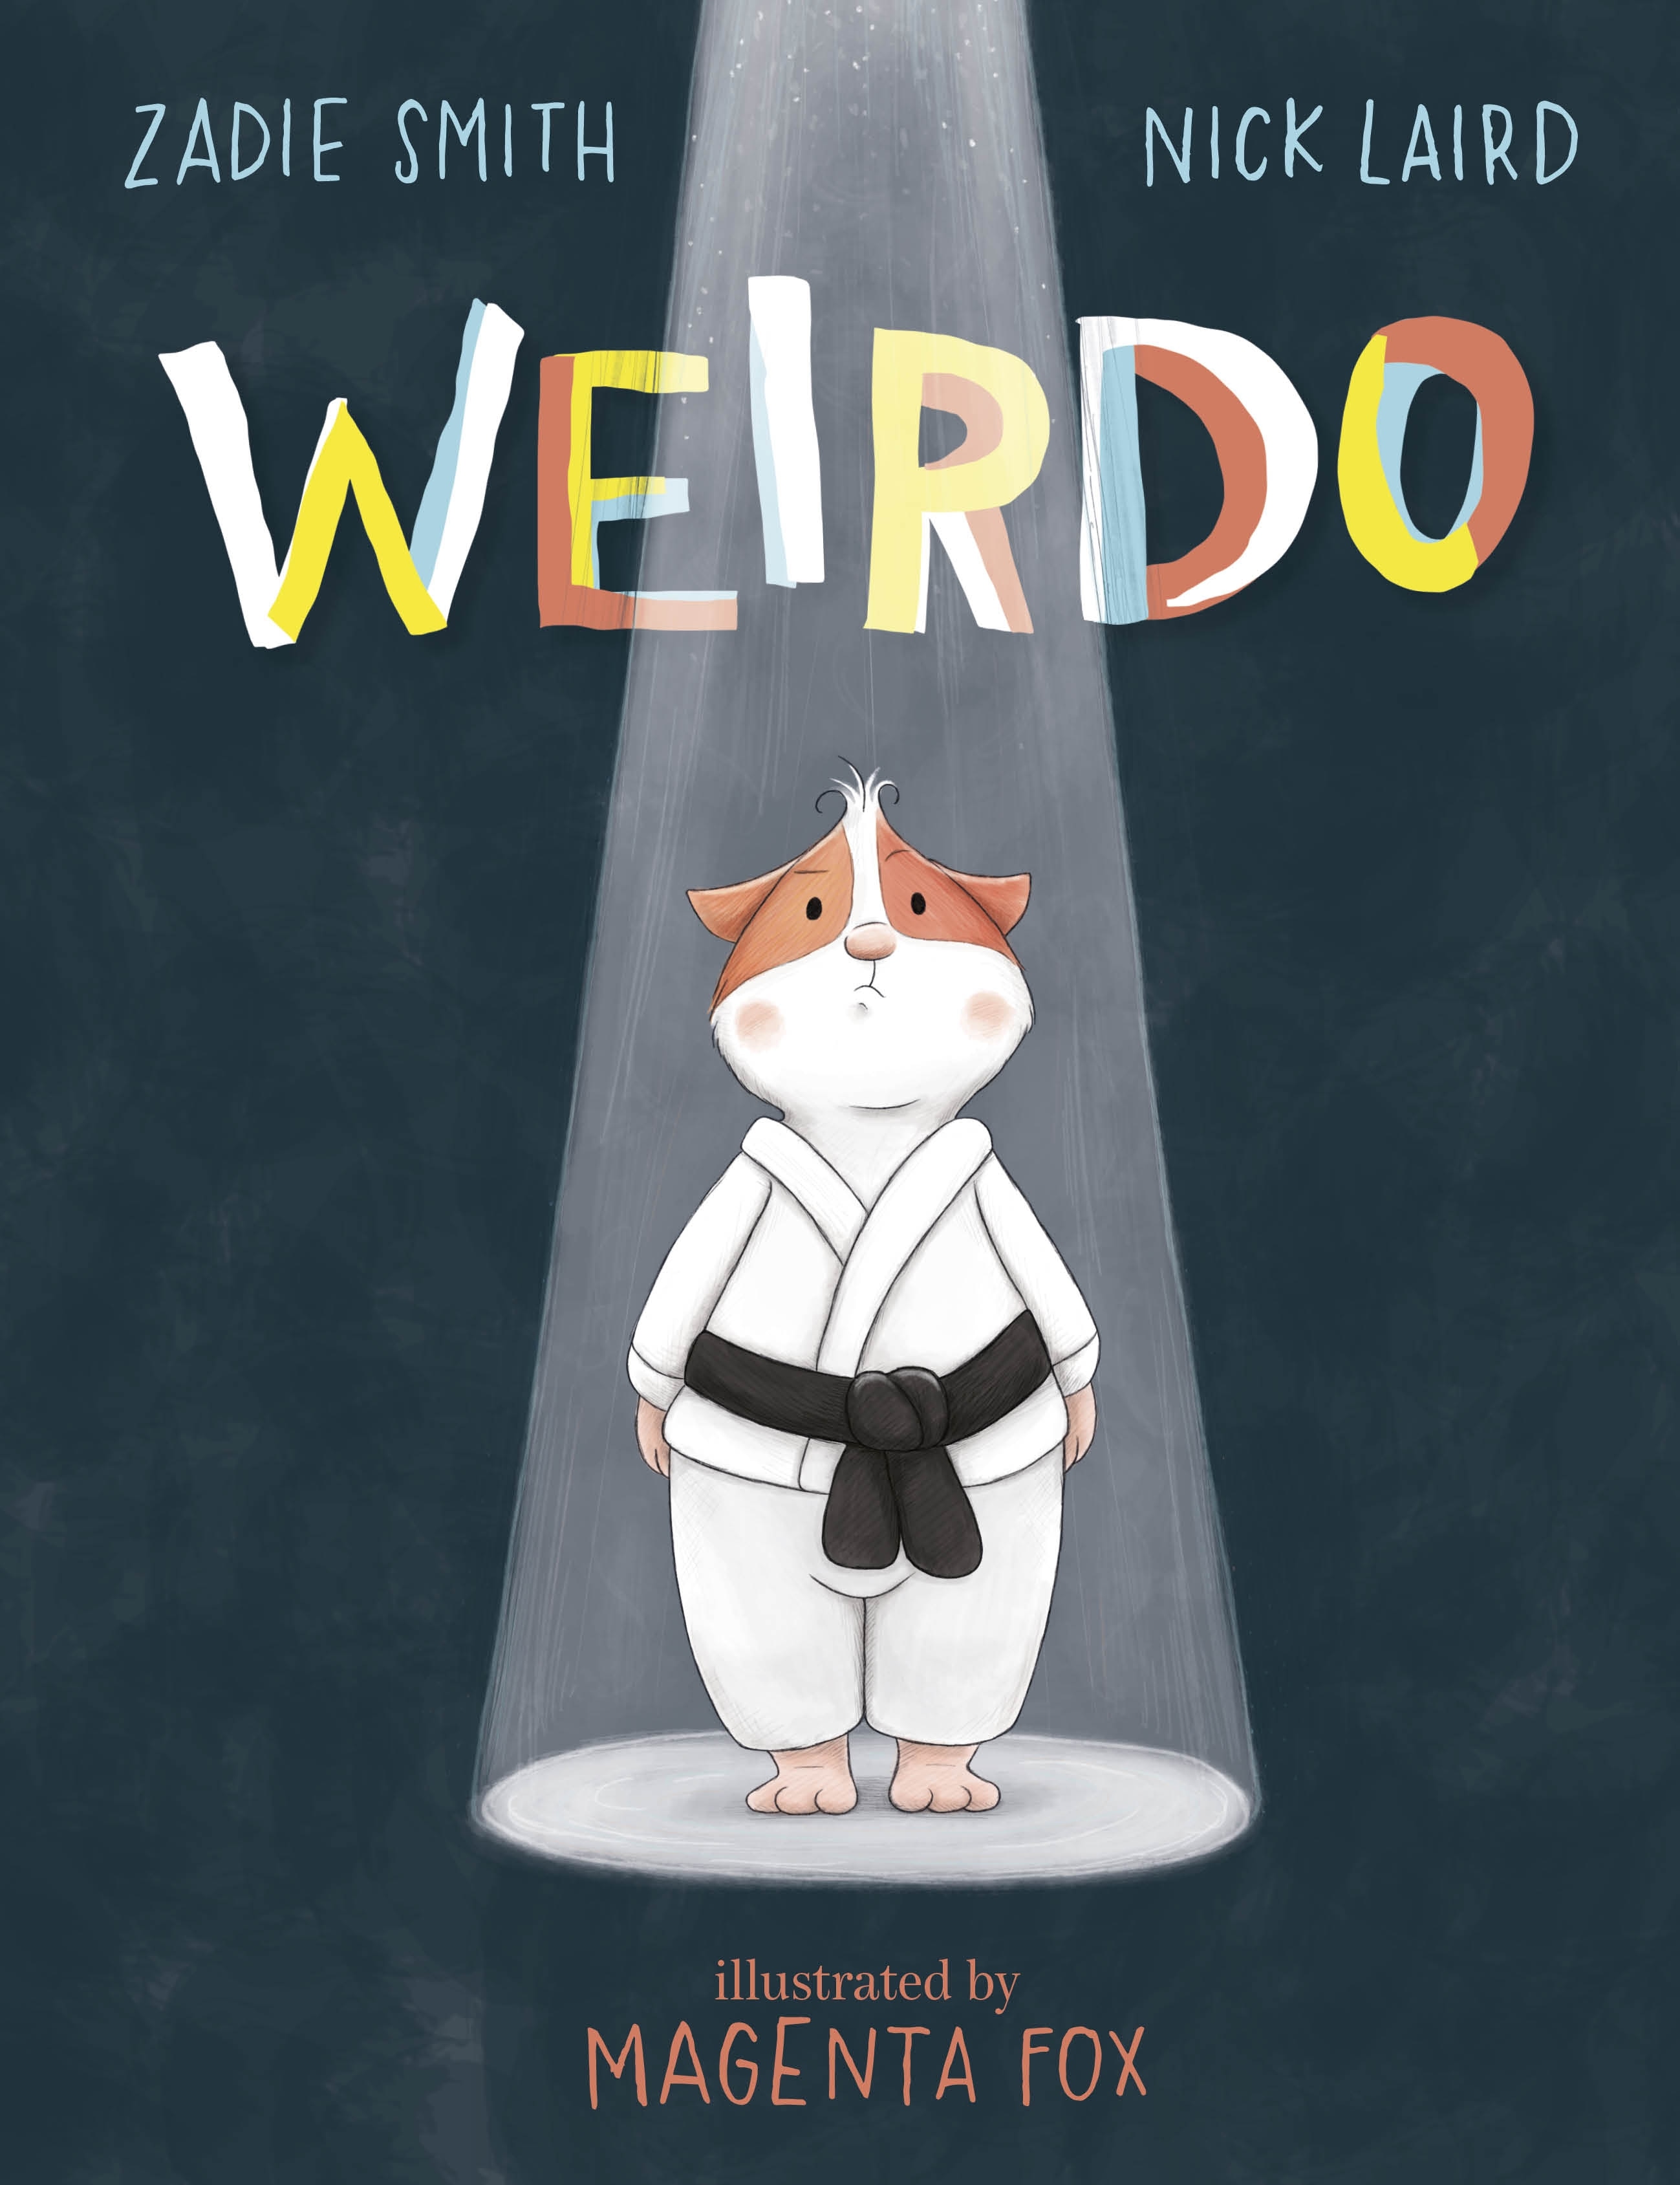 Book “Weirdo” by Zadie Smith, Nick Laird — April 15, 2021